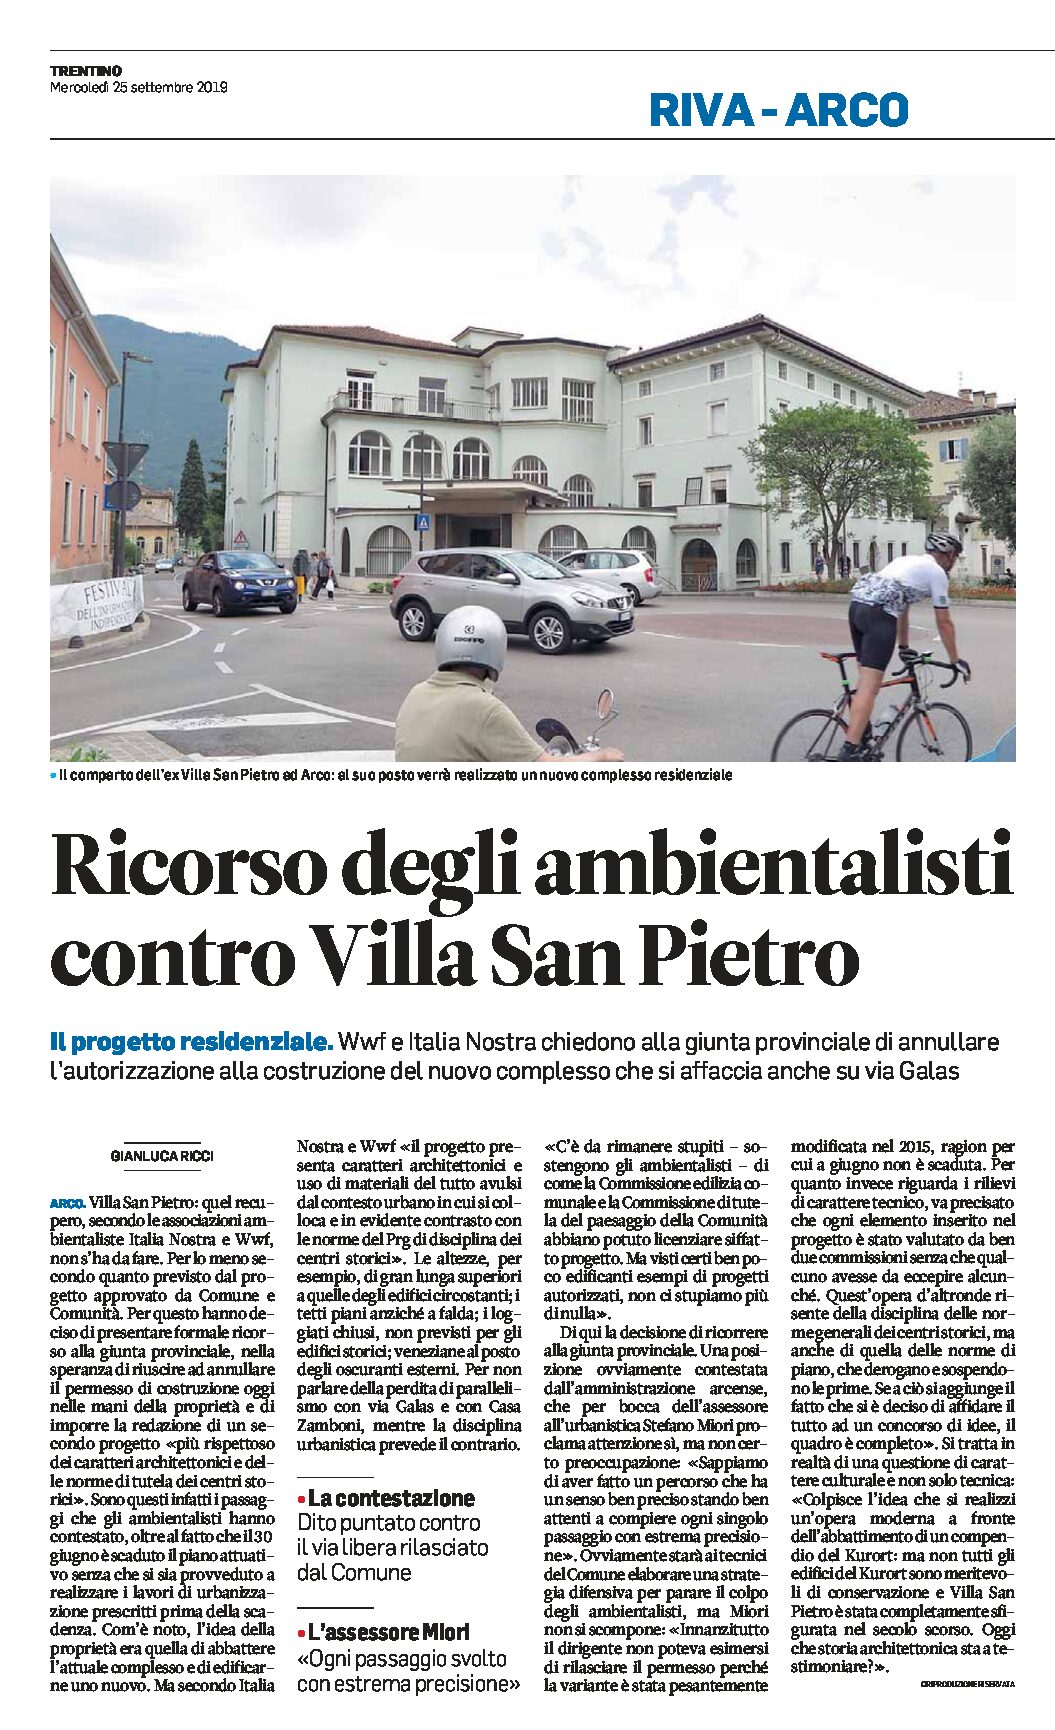 Arco, Villa San Pietro: ricorso degli ambientalisti contro il nuovo progetto